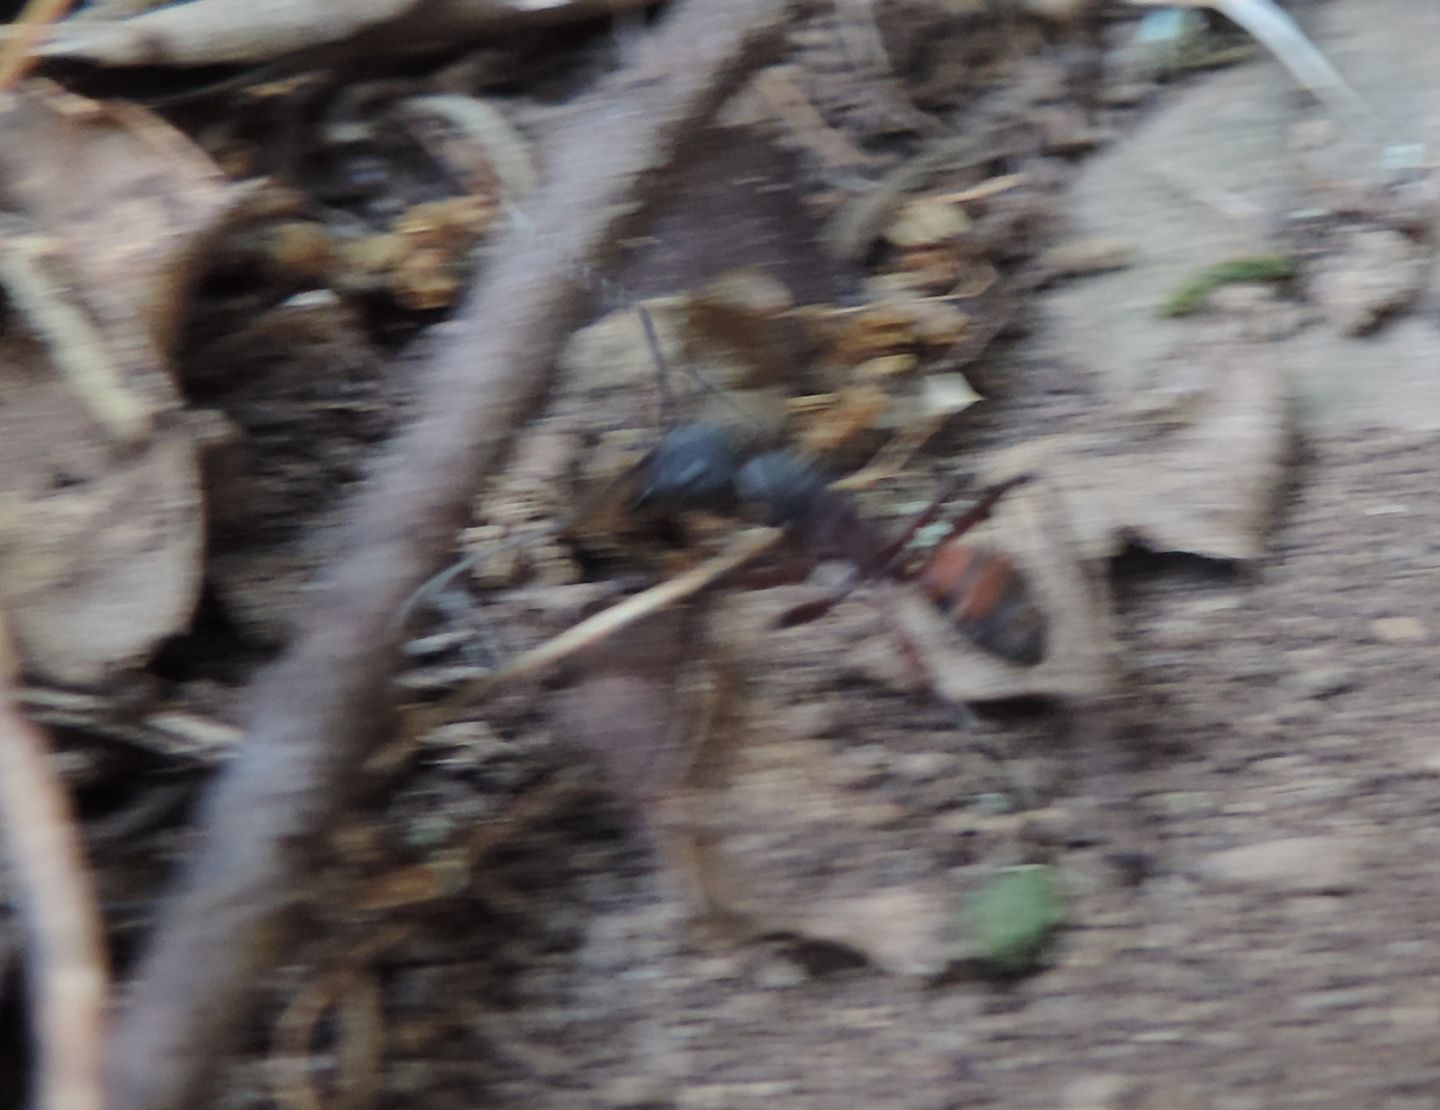 Camponotus (Myrmosericus) cruentatus dalla Spagna